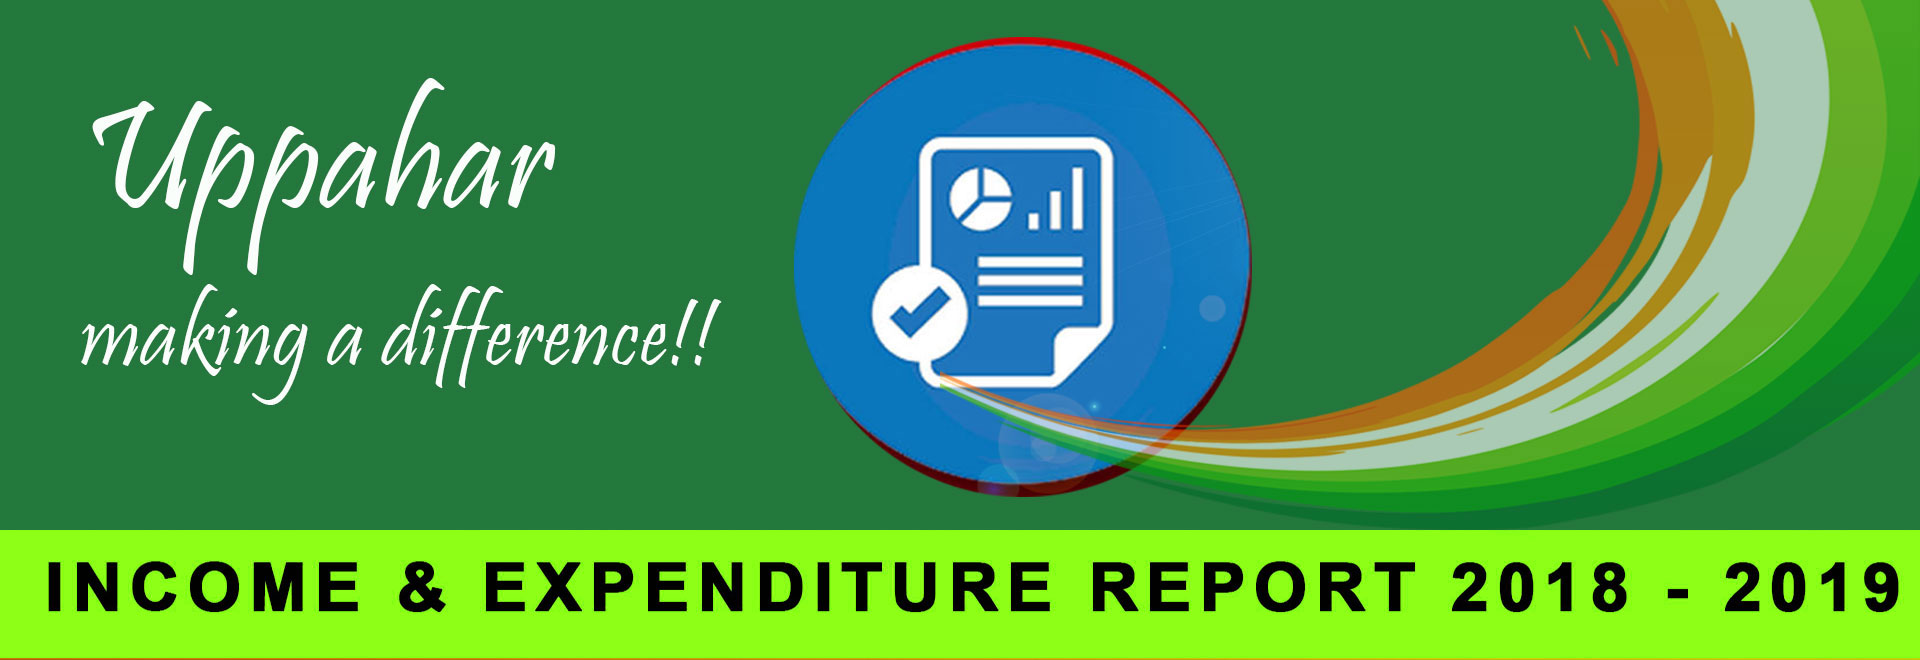 Audit Report 2018 - 2019